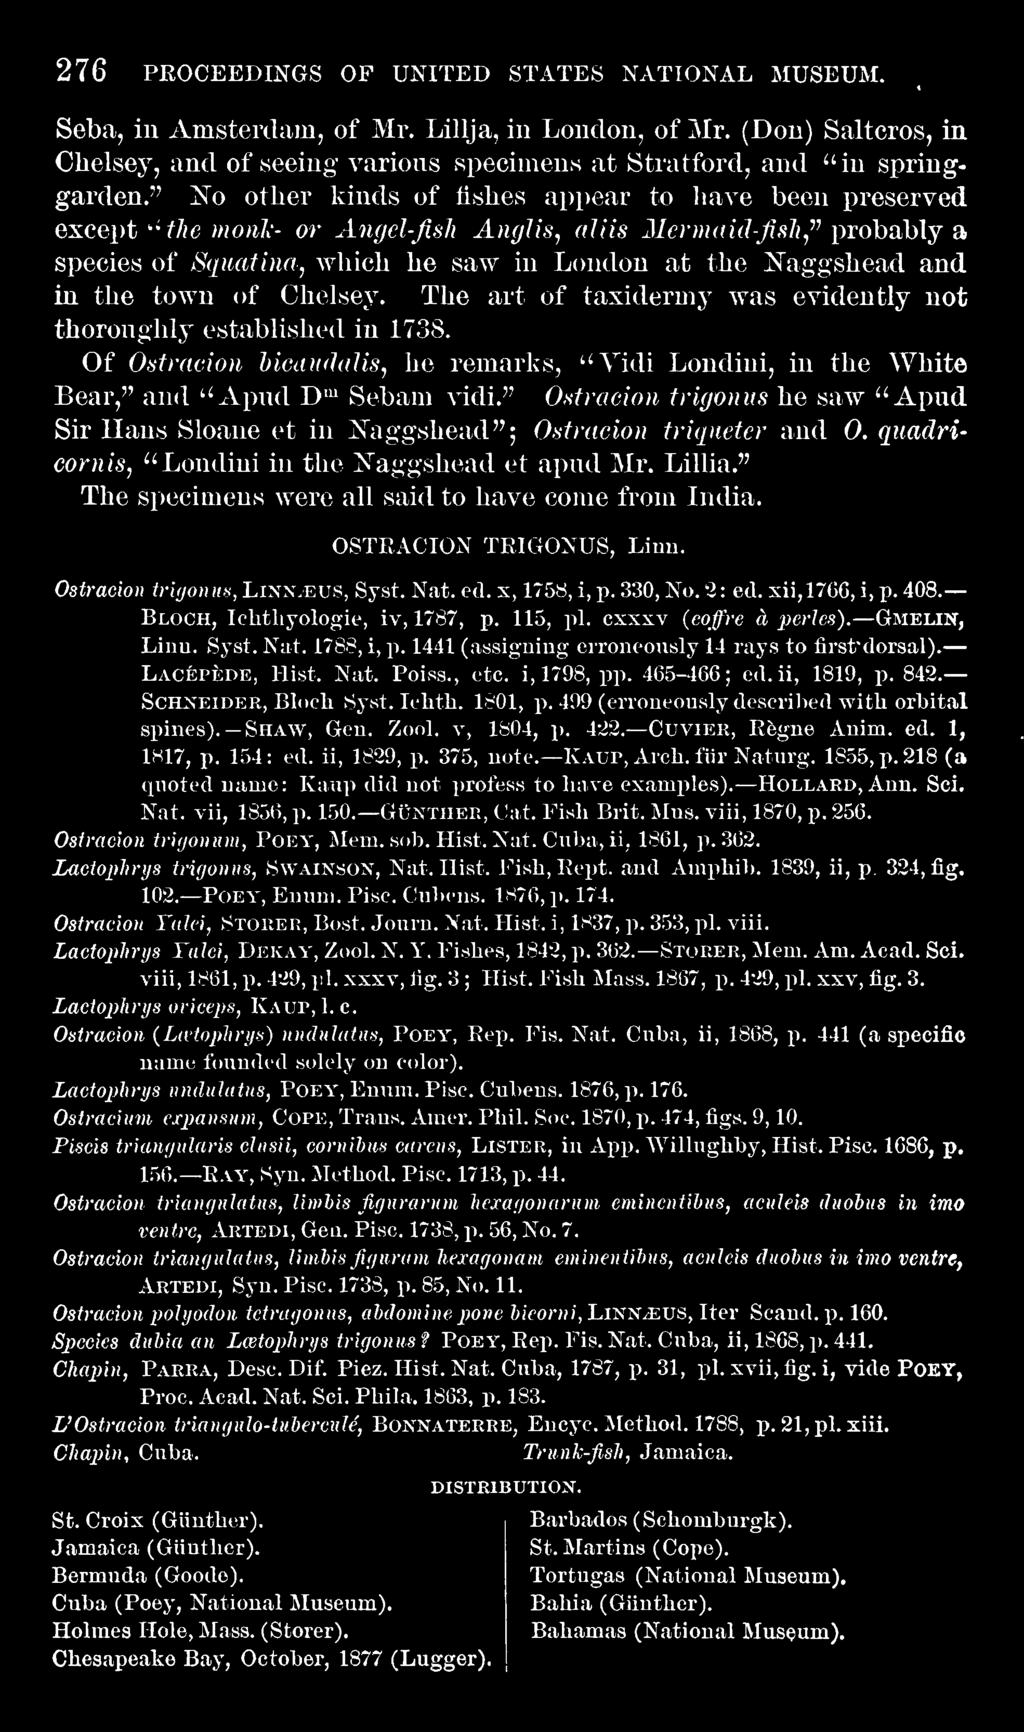 " The speciaieus were all said to have come from India. OSTRACION TRIGONUS, Linu. Ostraeion tr'ujonm, Linn/eus, Syst. N.at. eel. s, 1758, i, j). 330, No. 2: ed. xii,17g6, i, p. 408.